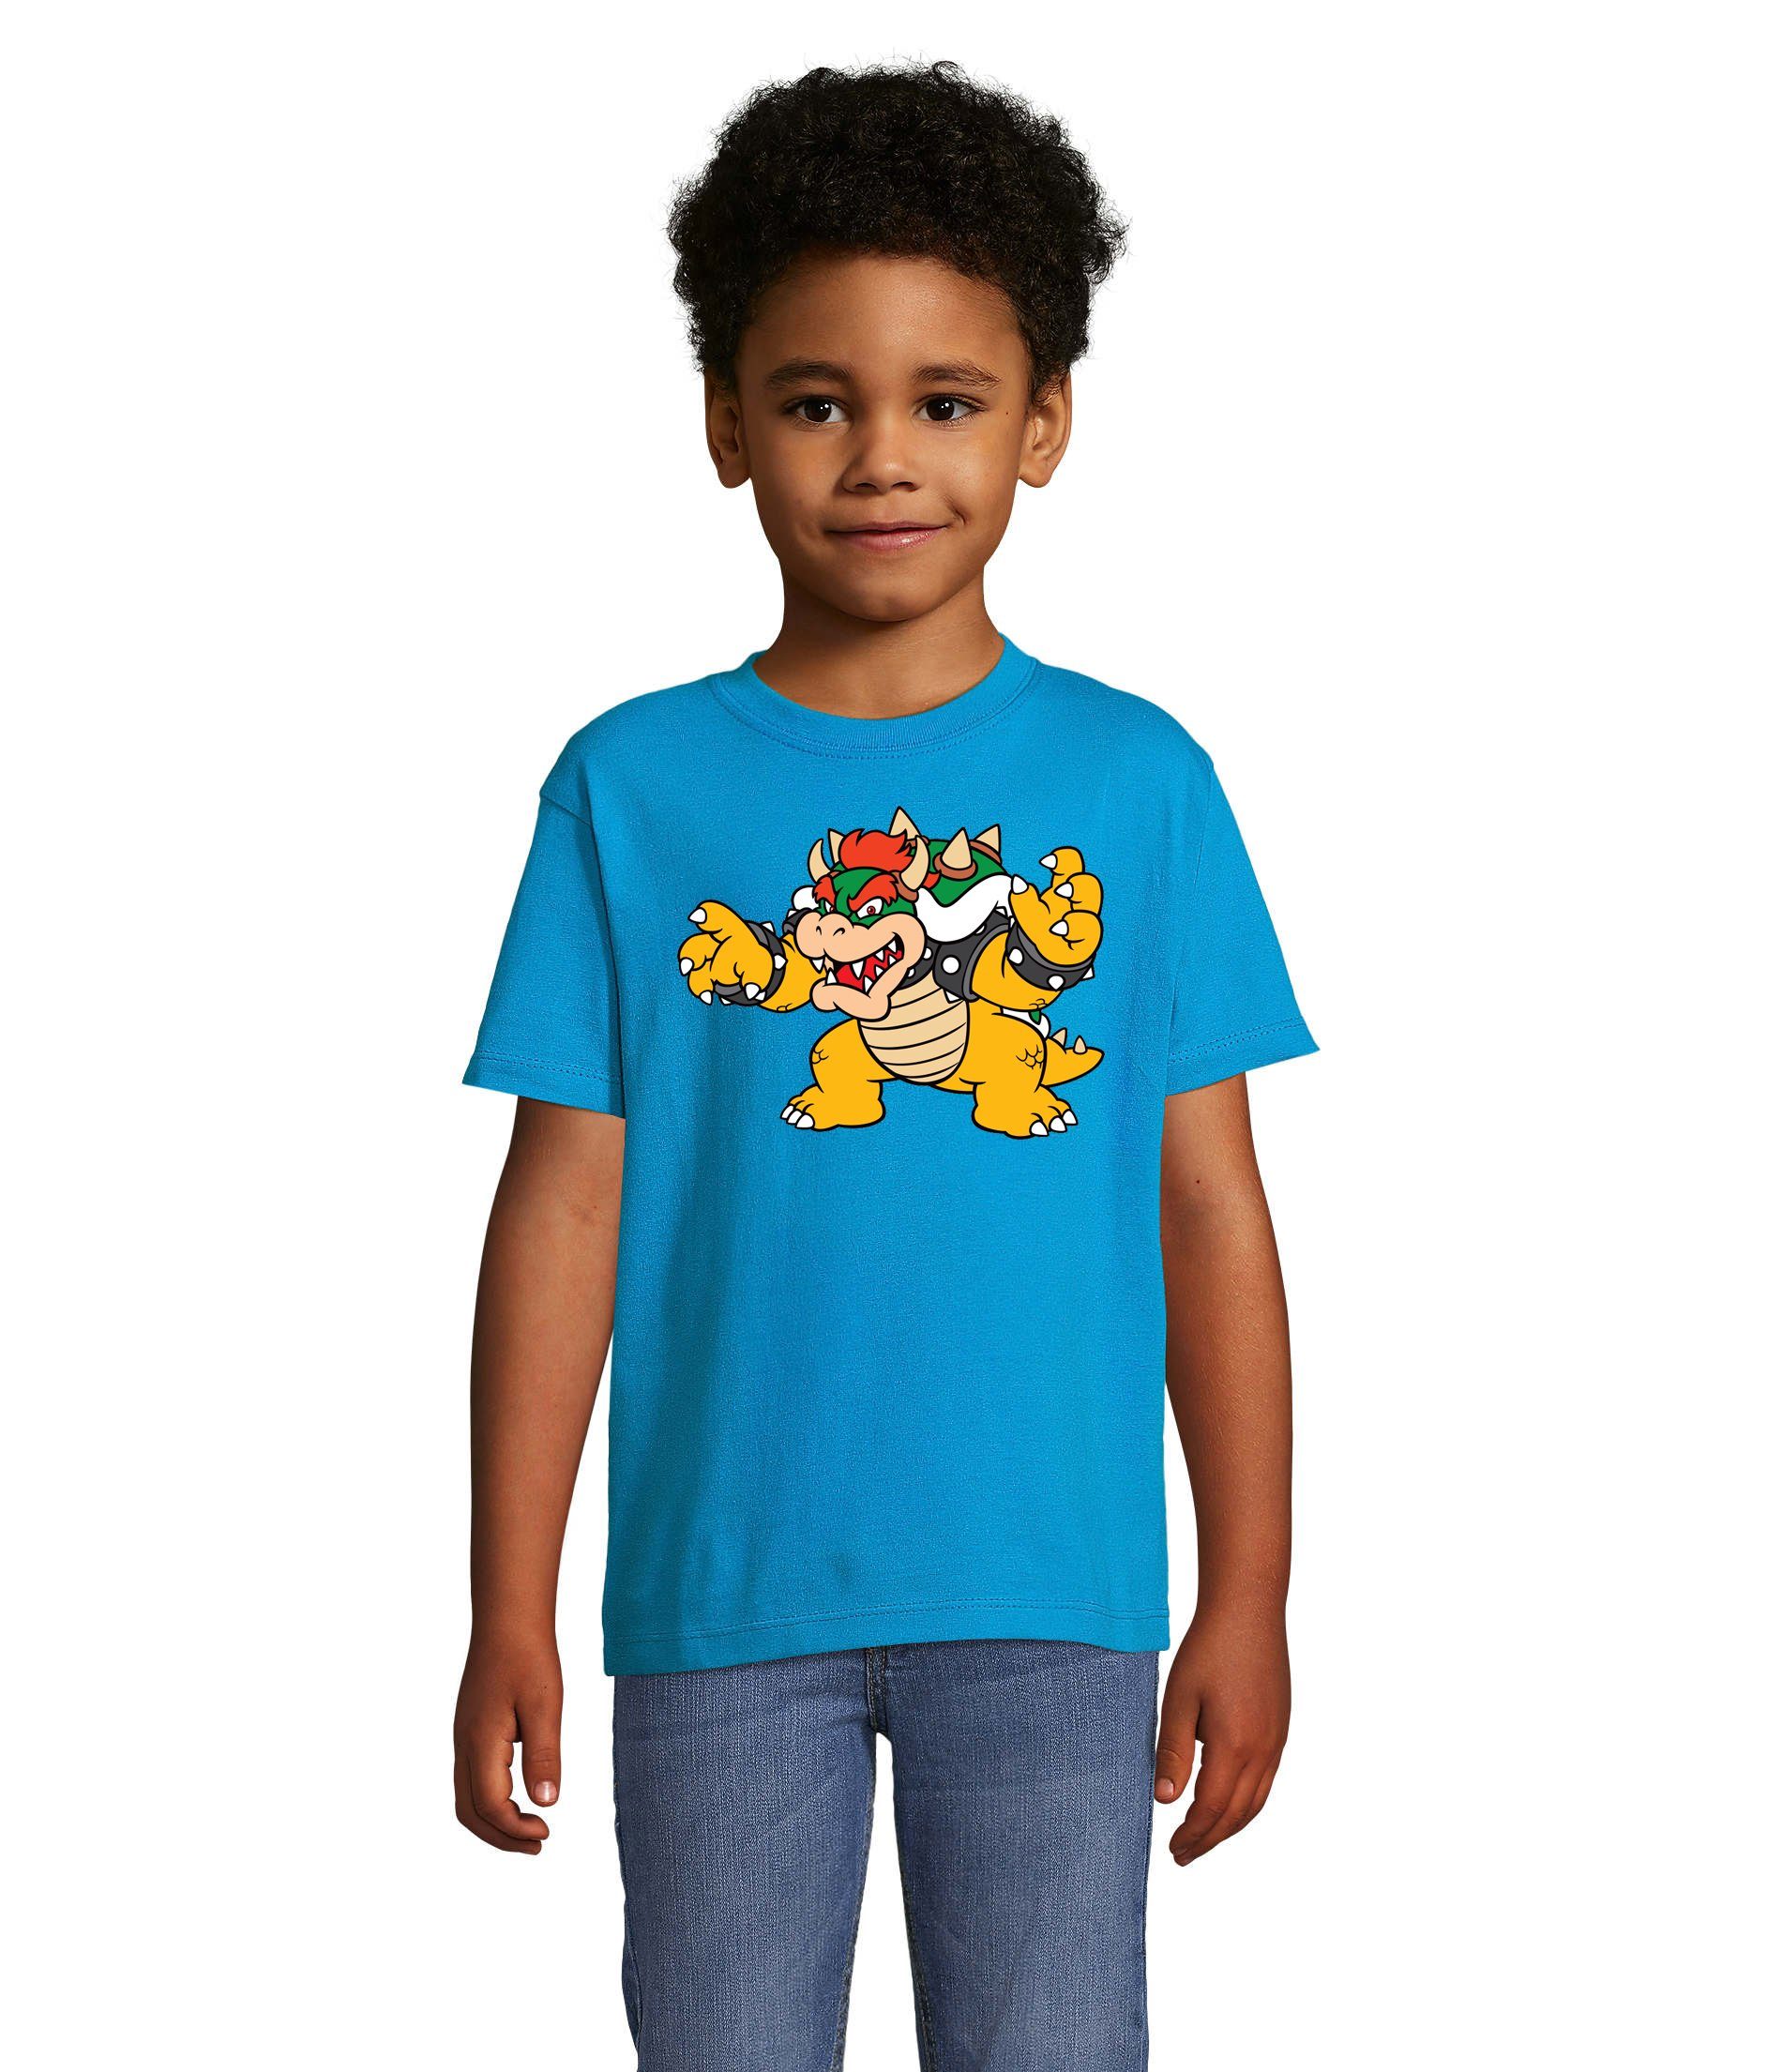 Blondie & Brownie T-Shirt Bowser Gamer Kinder Luigi Mario Yoshi Blau Game Nintendo Konsole